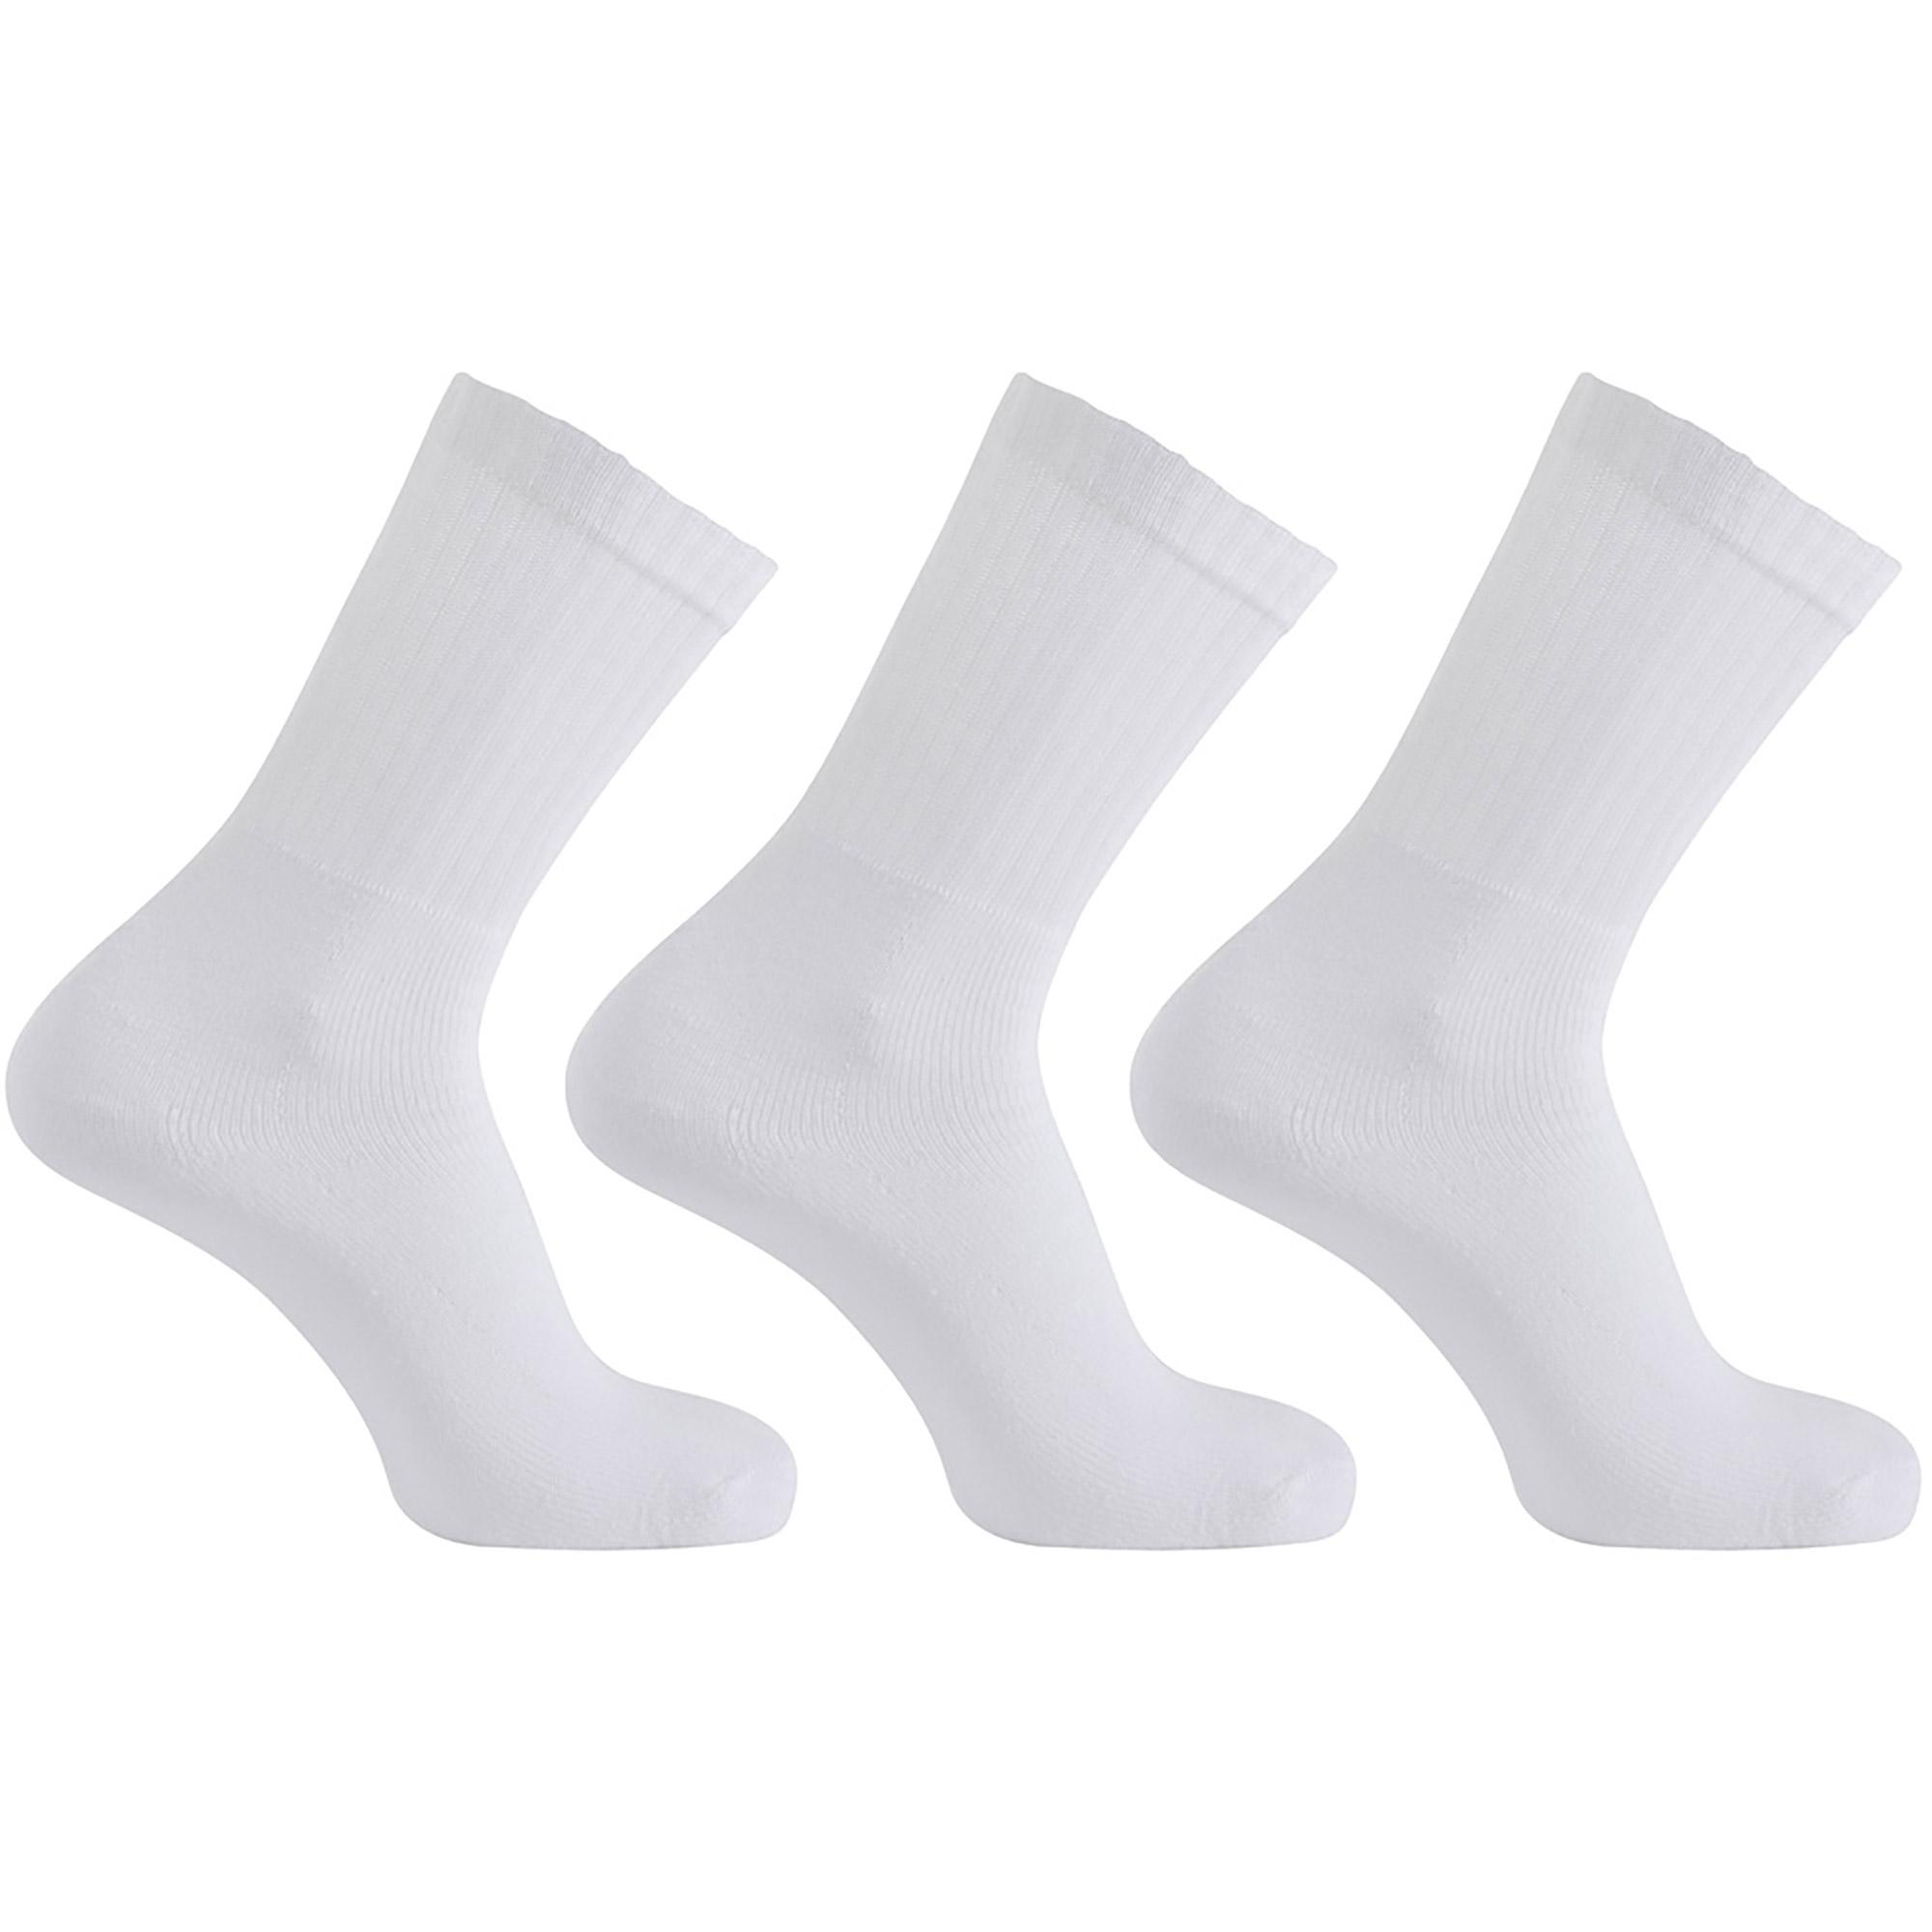 Horizon Sports Kids Crew Socks (3 Pairs) - White - Tennisnuts.com